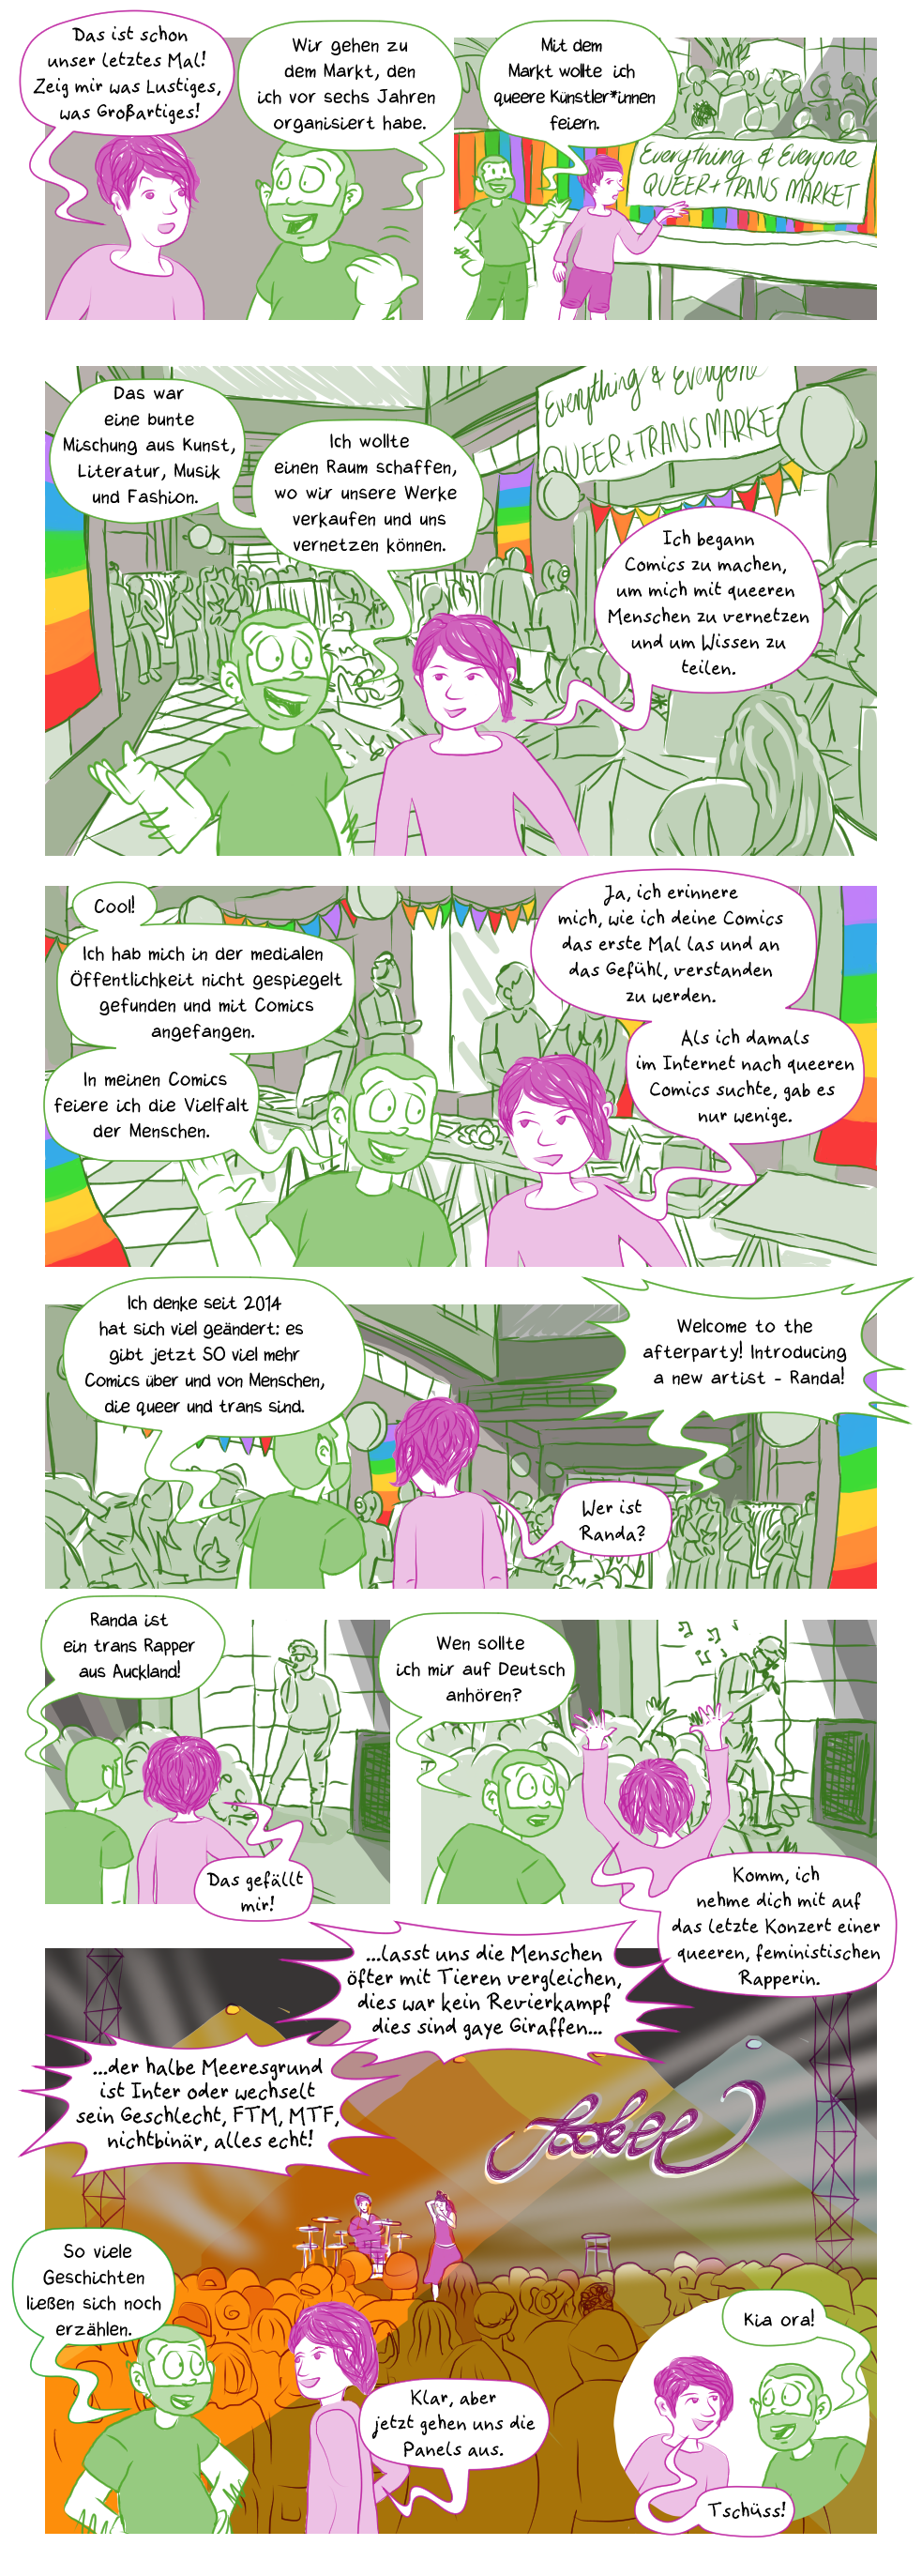 visuelles Comic: Queere Comic Konversation: Dezember - Queerer Markt, rein text-basiertes Comic folgt nach den Anmerkungen